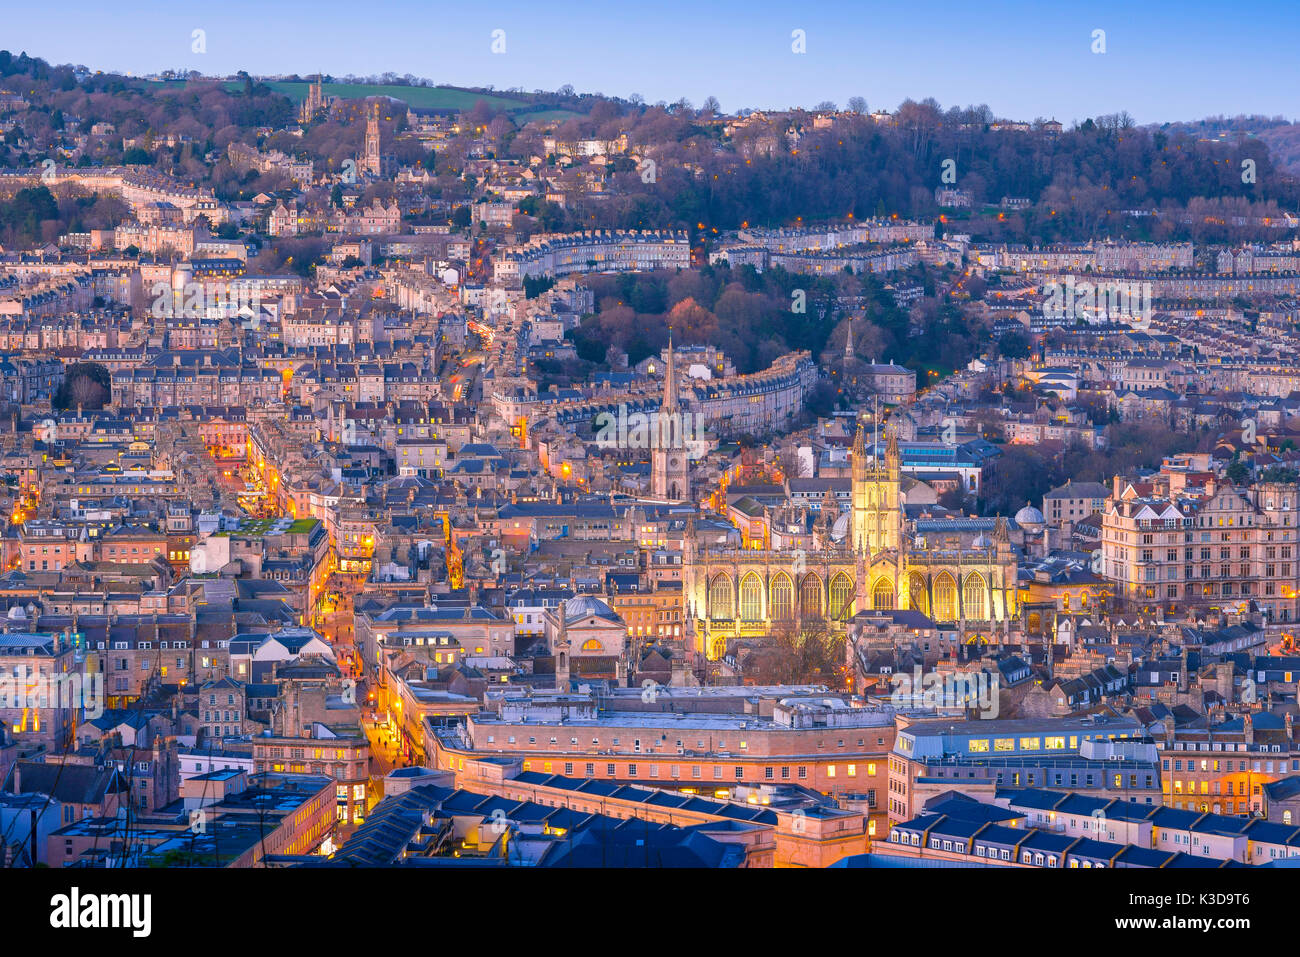 La ville de Bath, Royaume-Uni Vue aérienne de la ville de Bath, au crépuscule d'un soir d'hiver, Somerset, England, UK Banque D'Images